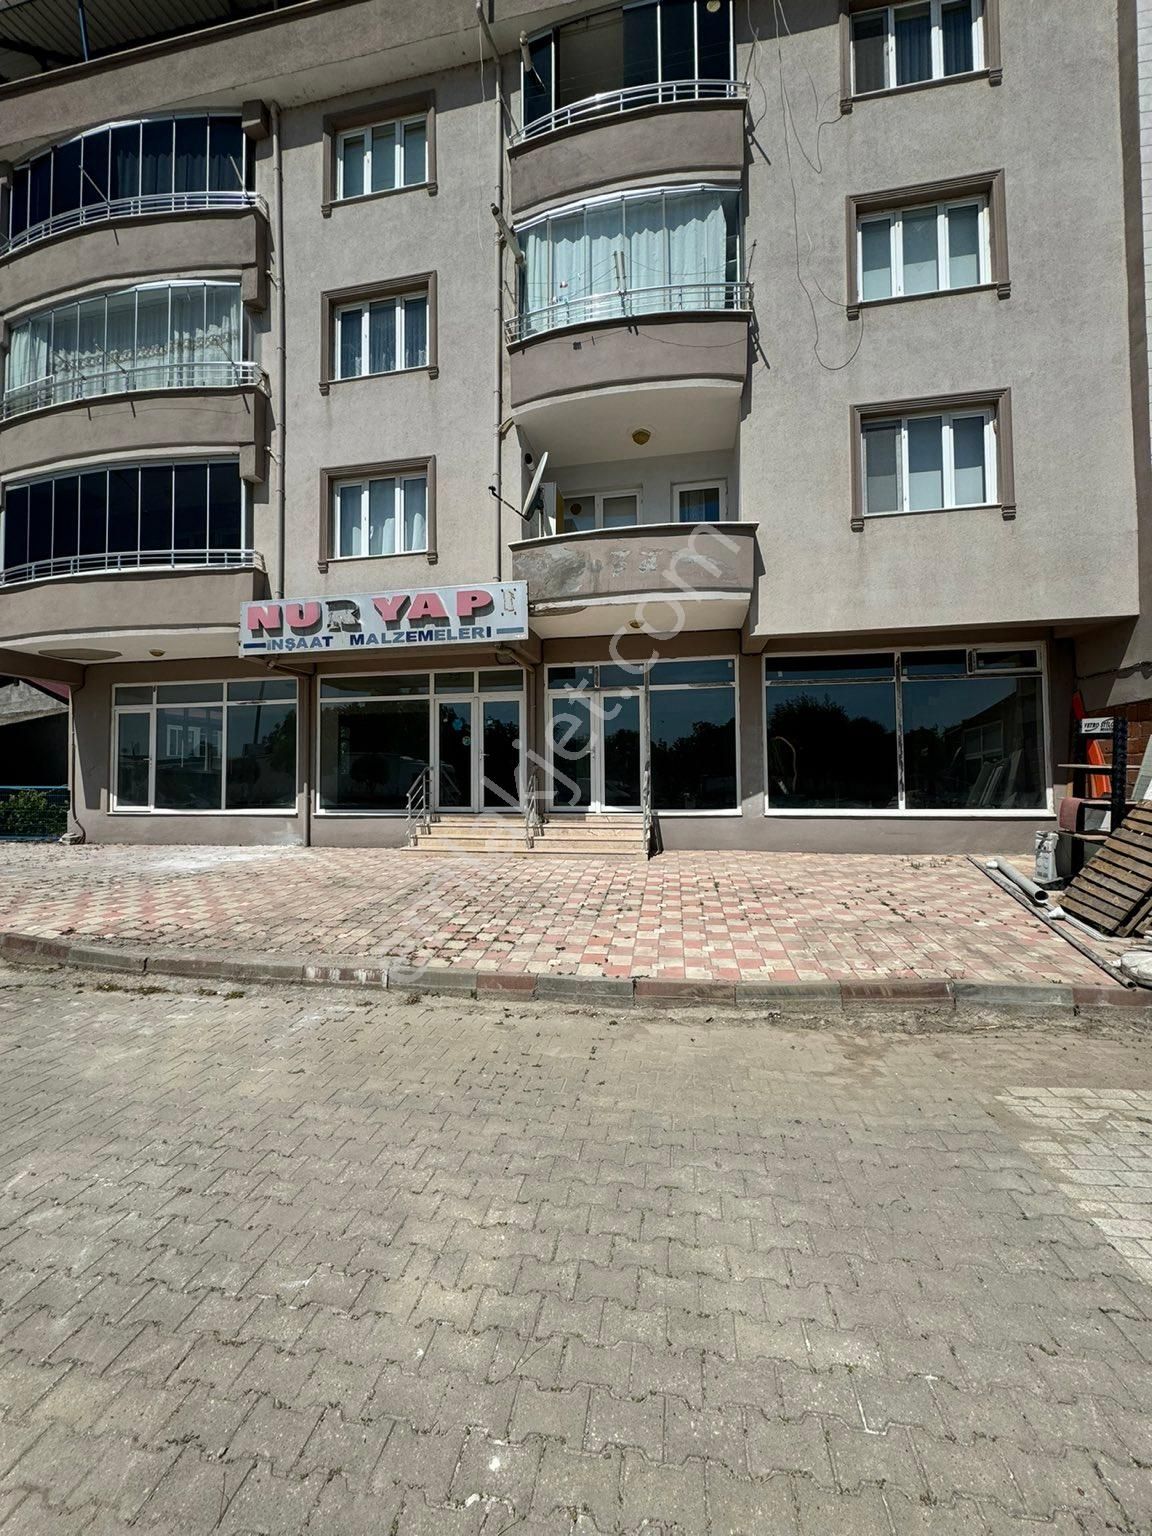 Mustafakemalpaşa Hamidiye Satılık Daire Hamideye mah satılın 230 m2 dükkan